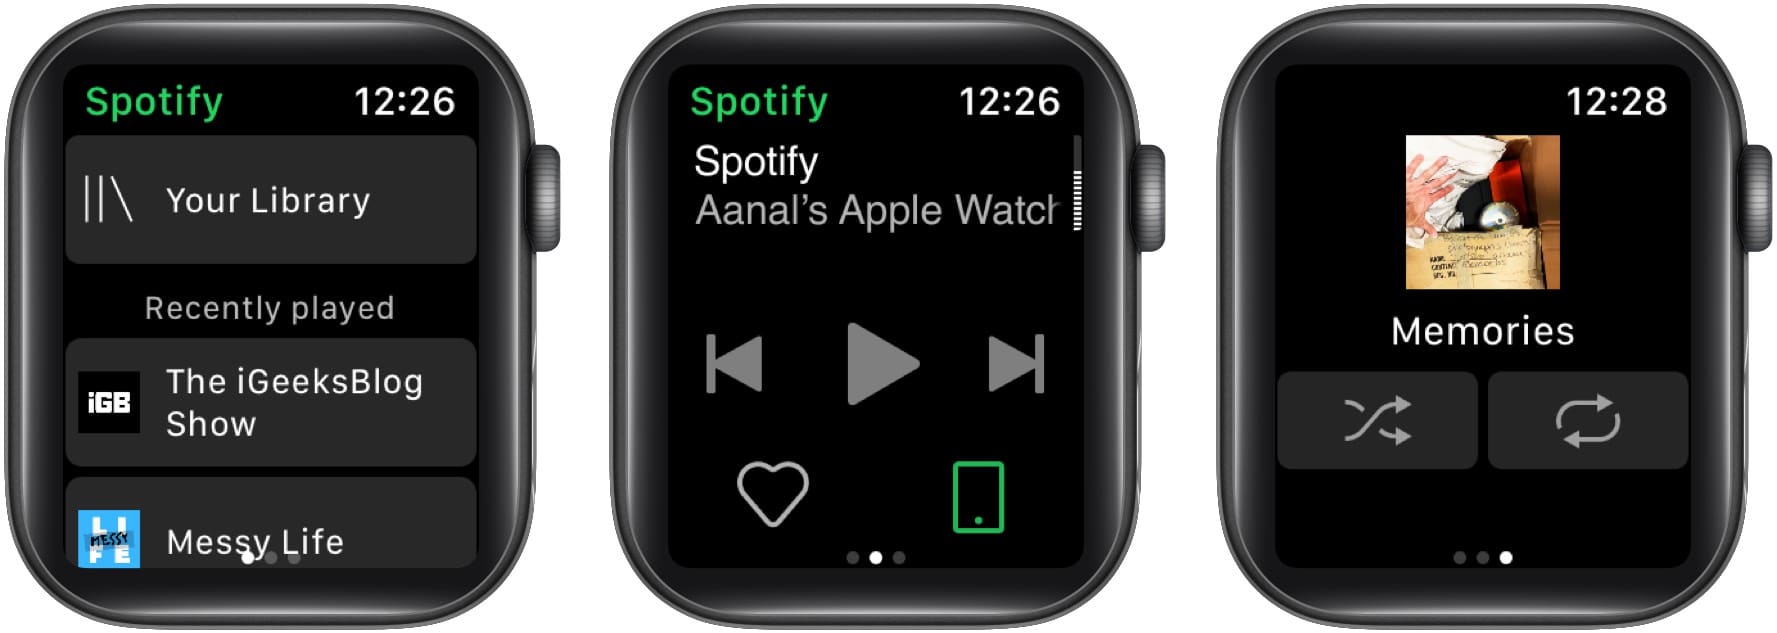 Spotify App On Apple Watch